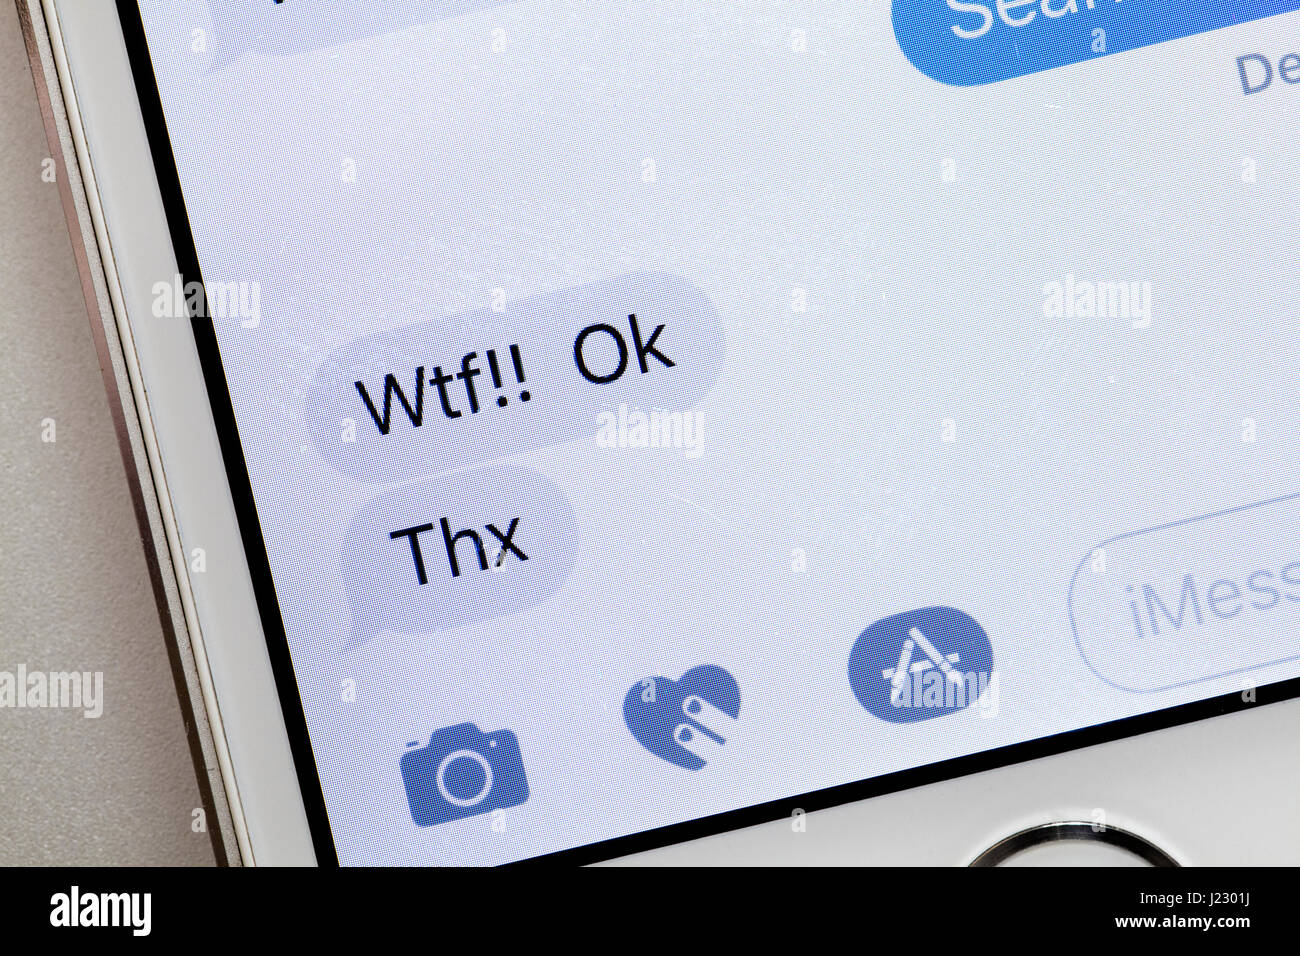 Sms-Nachricht auf dem Bildschirm des iPhone (WTF Text, Thx Text) - USA Stockfoto